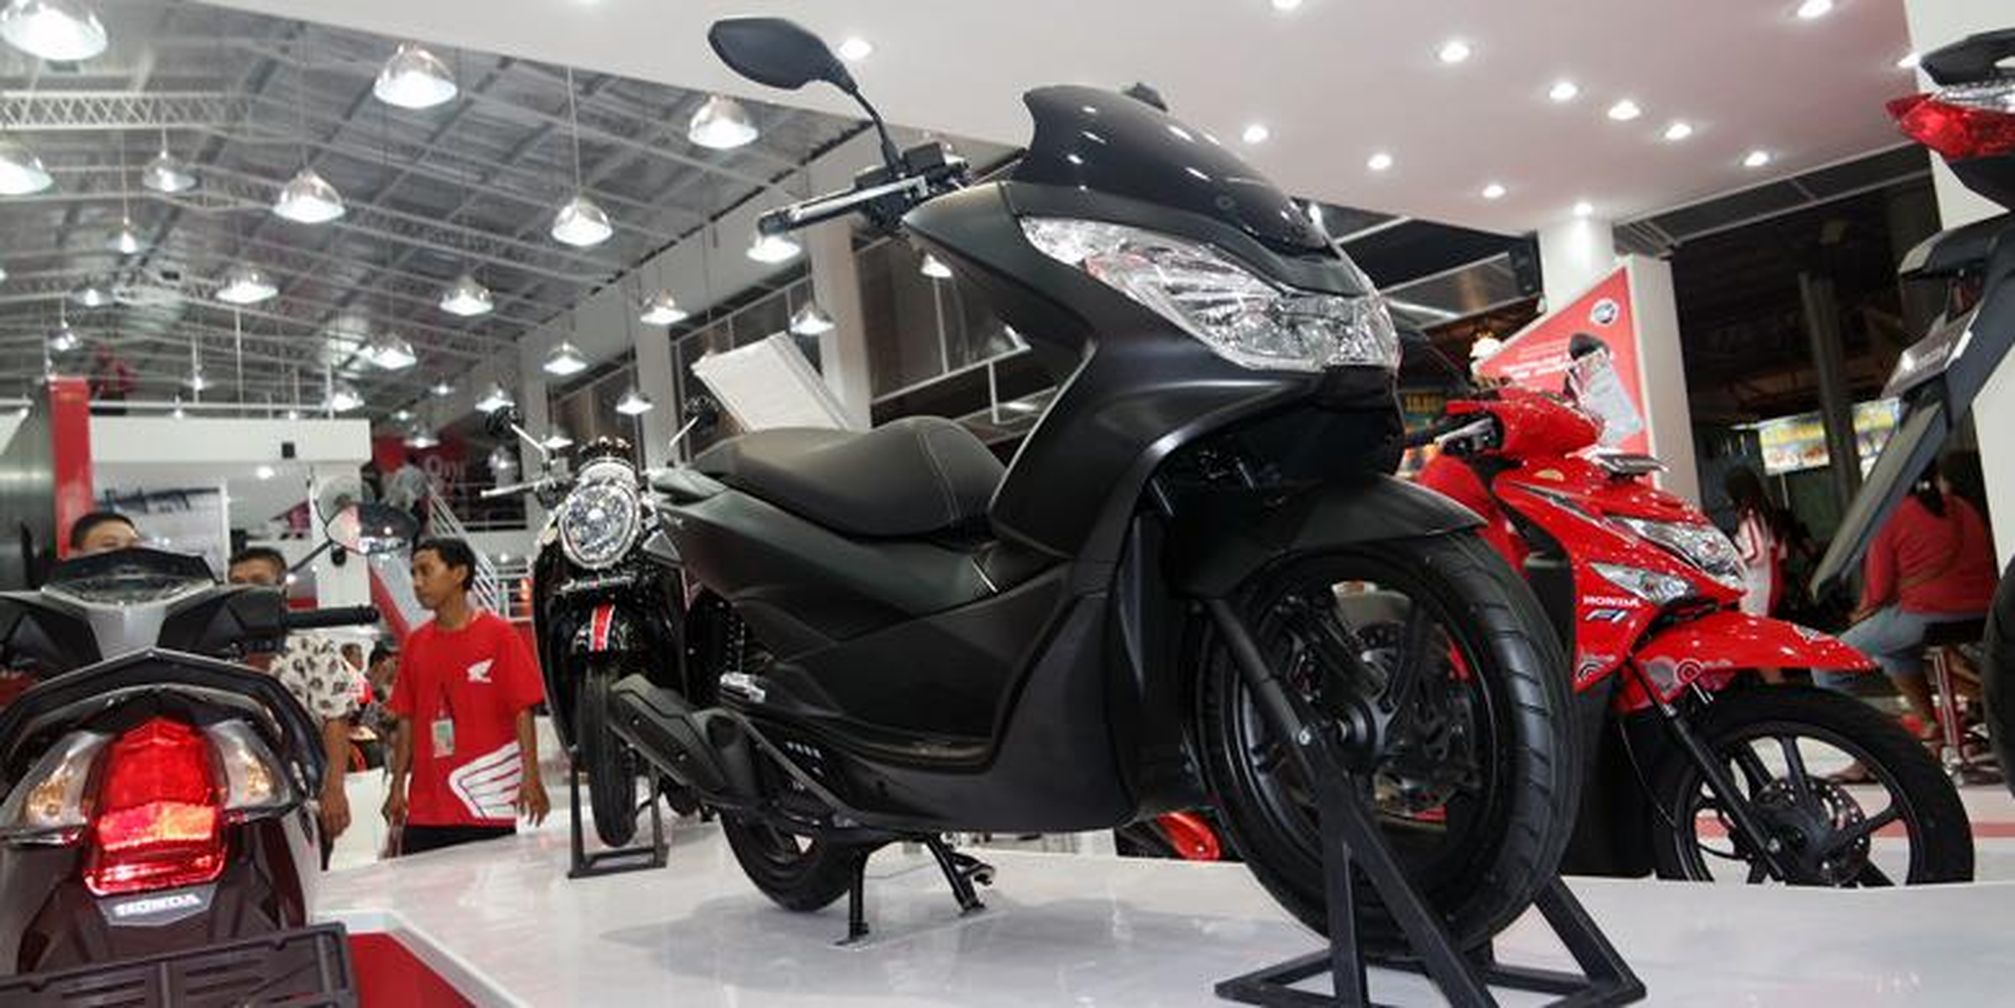 Honda PCX Tampil Misterius Di Jakarta Fair